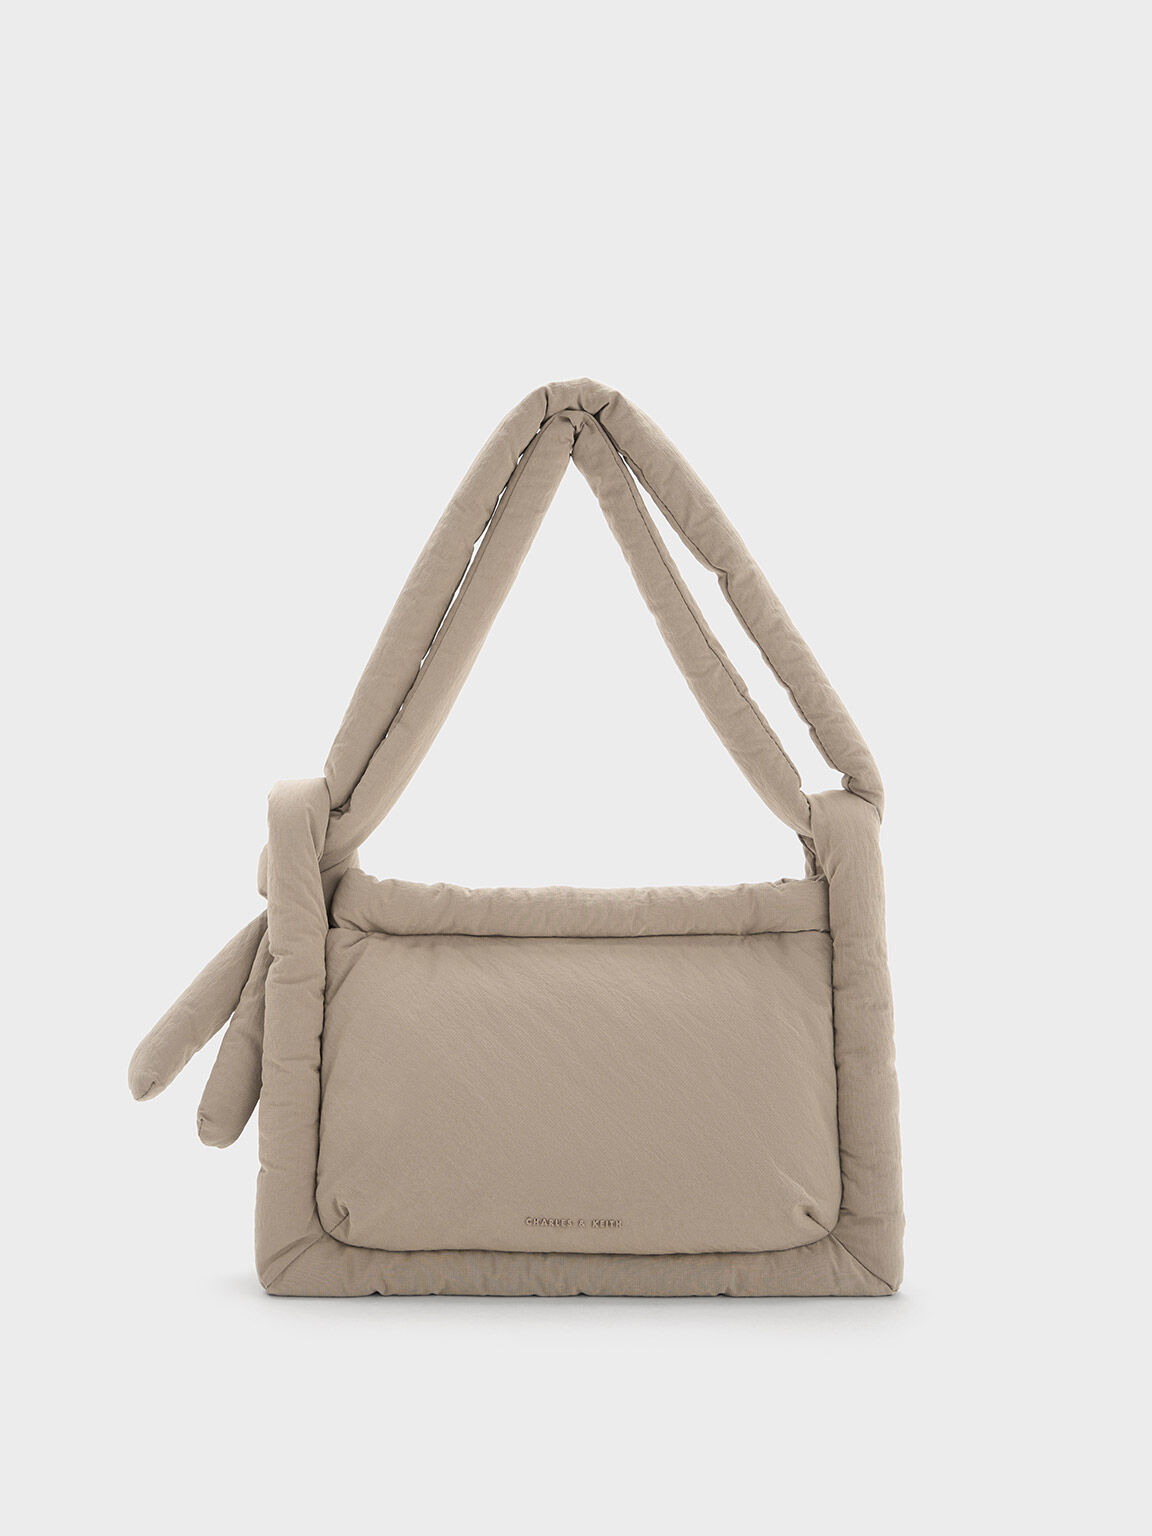 Dooney & Bourke Beige Bags & Handbags for Women | eBay